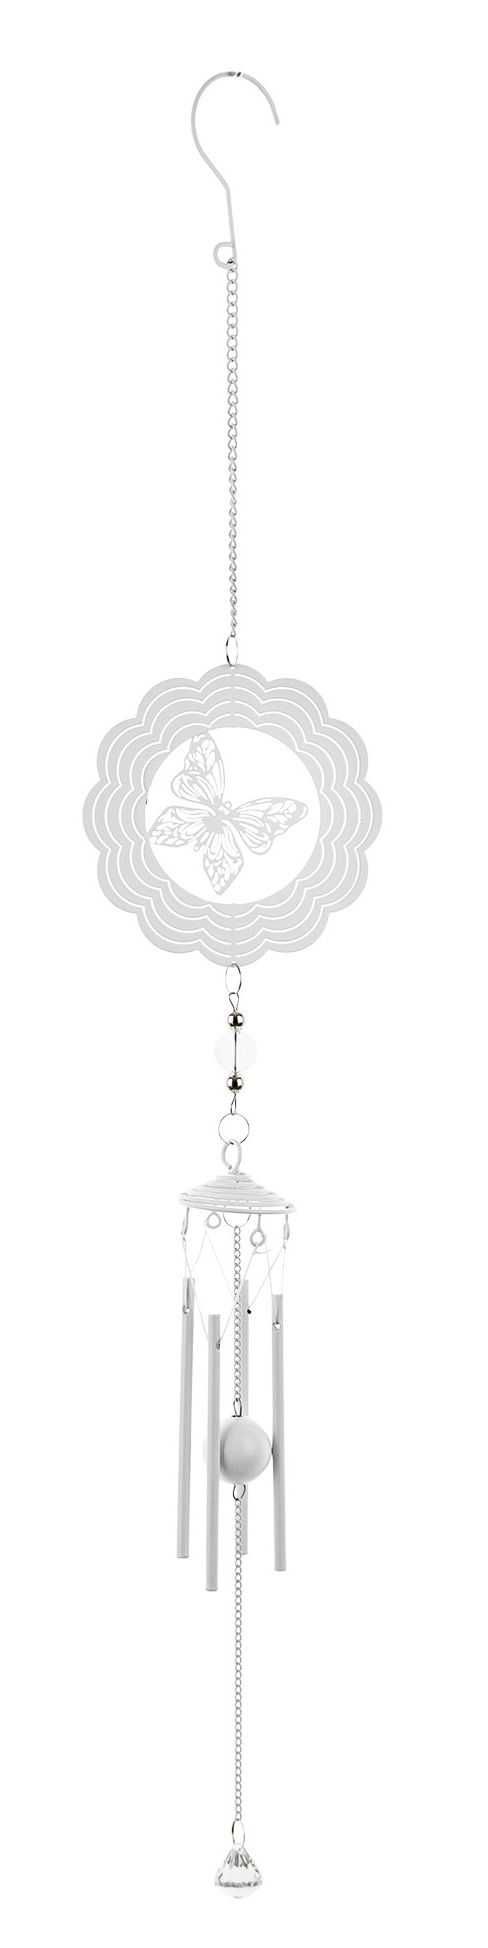 Dekoracja wisząca biała metalowa ozdobna Motylek 73 cm dzwonek